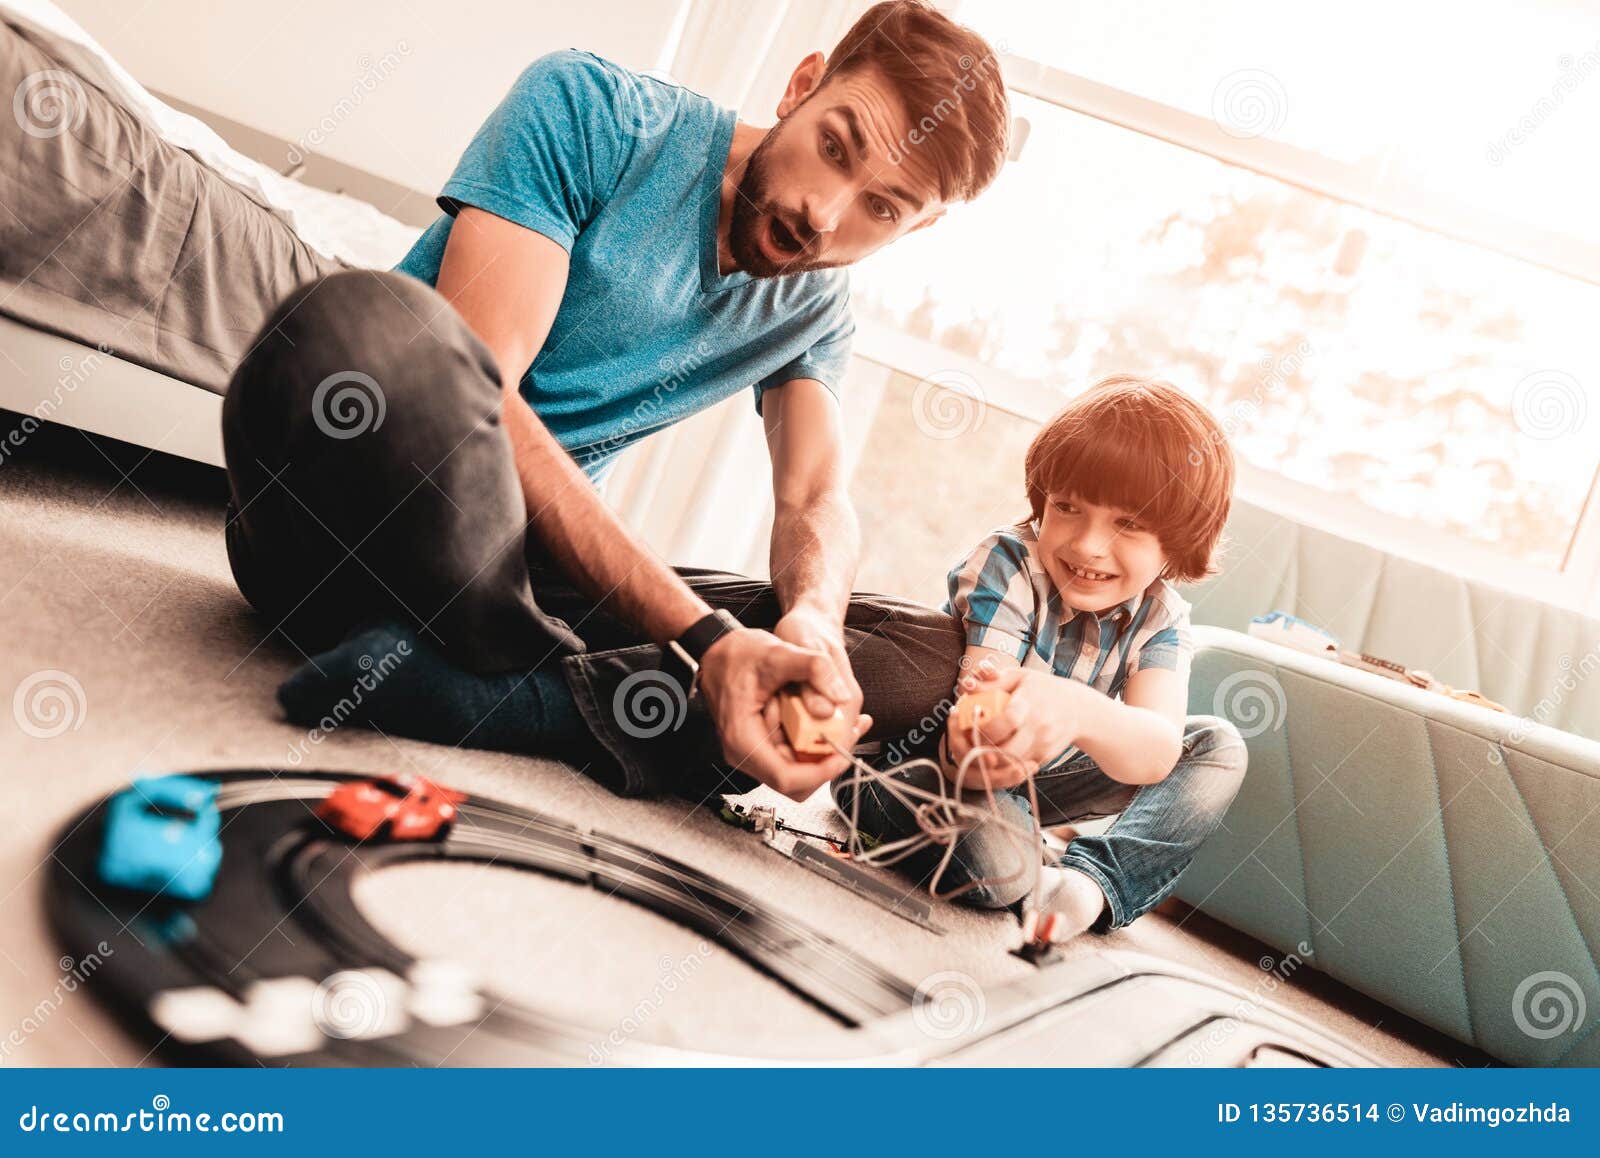 Папа играет с сыном. Папа играет с сыном в машинки. Папа и сын игра. Папа и сын играют в электрика.